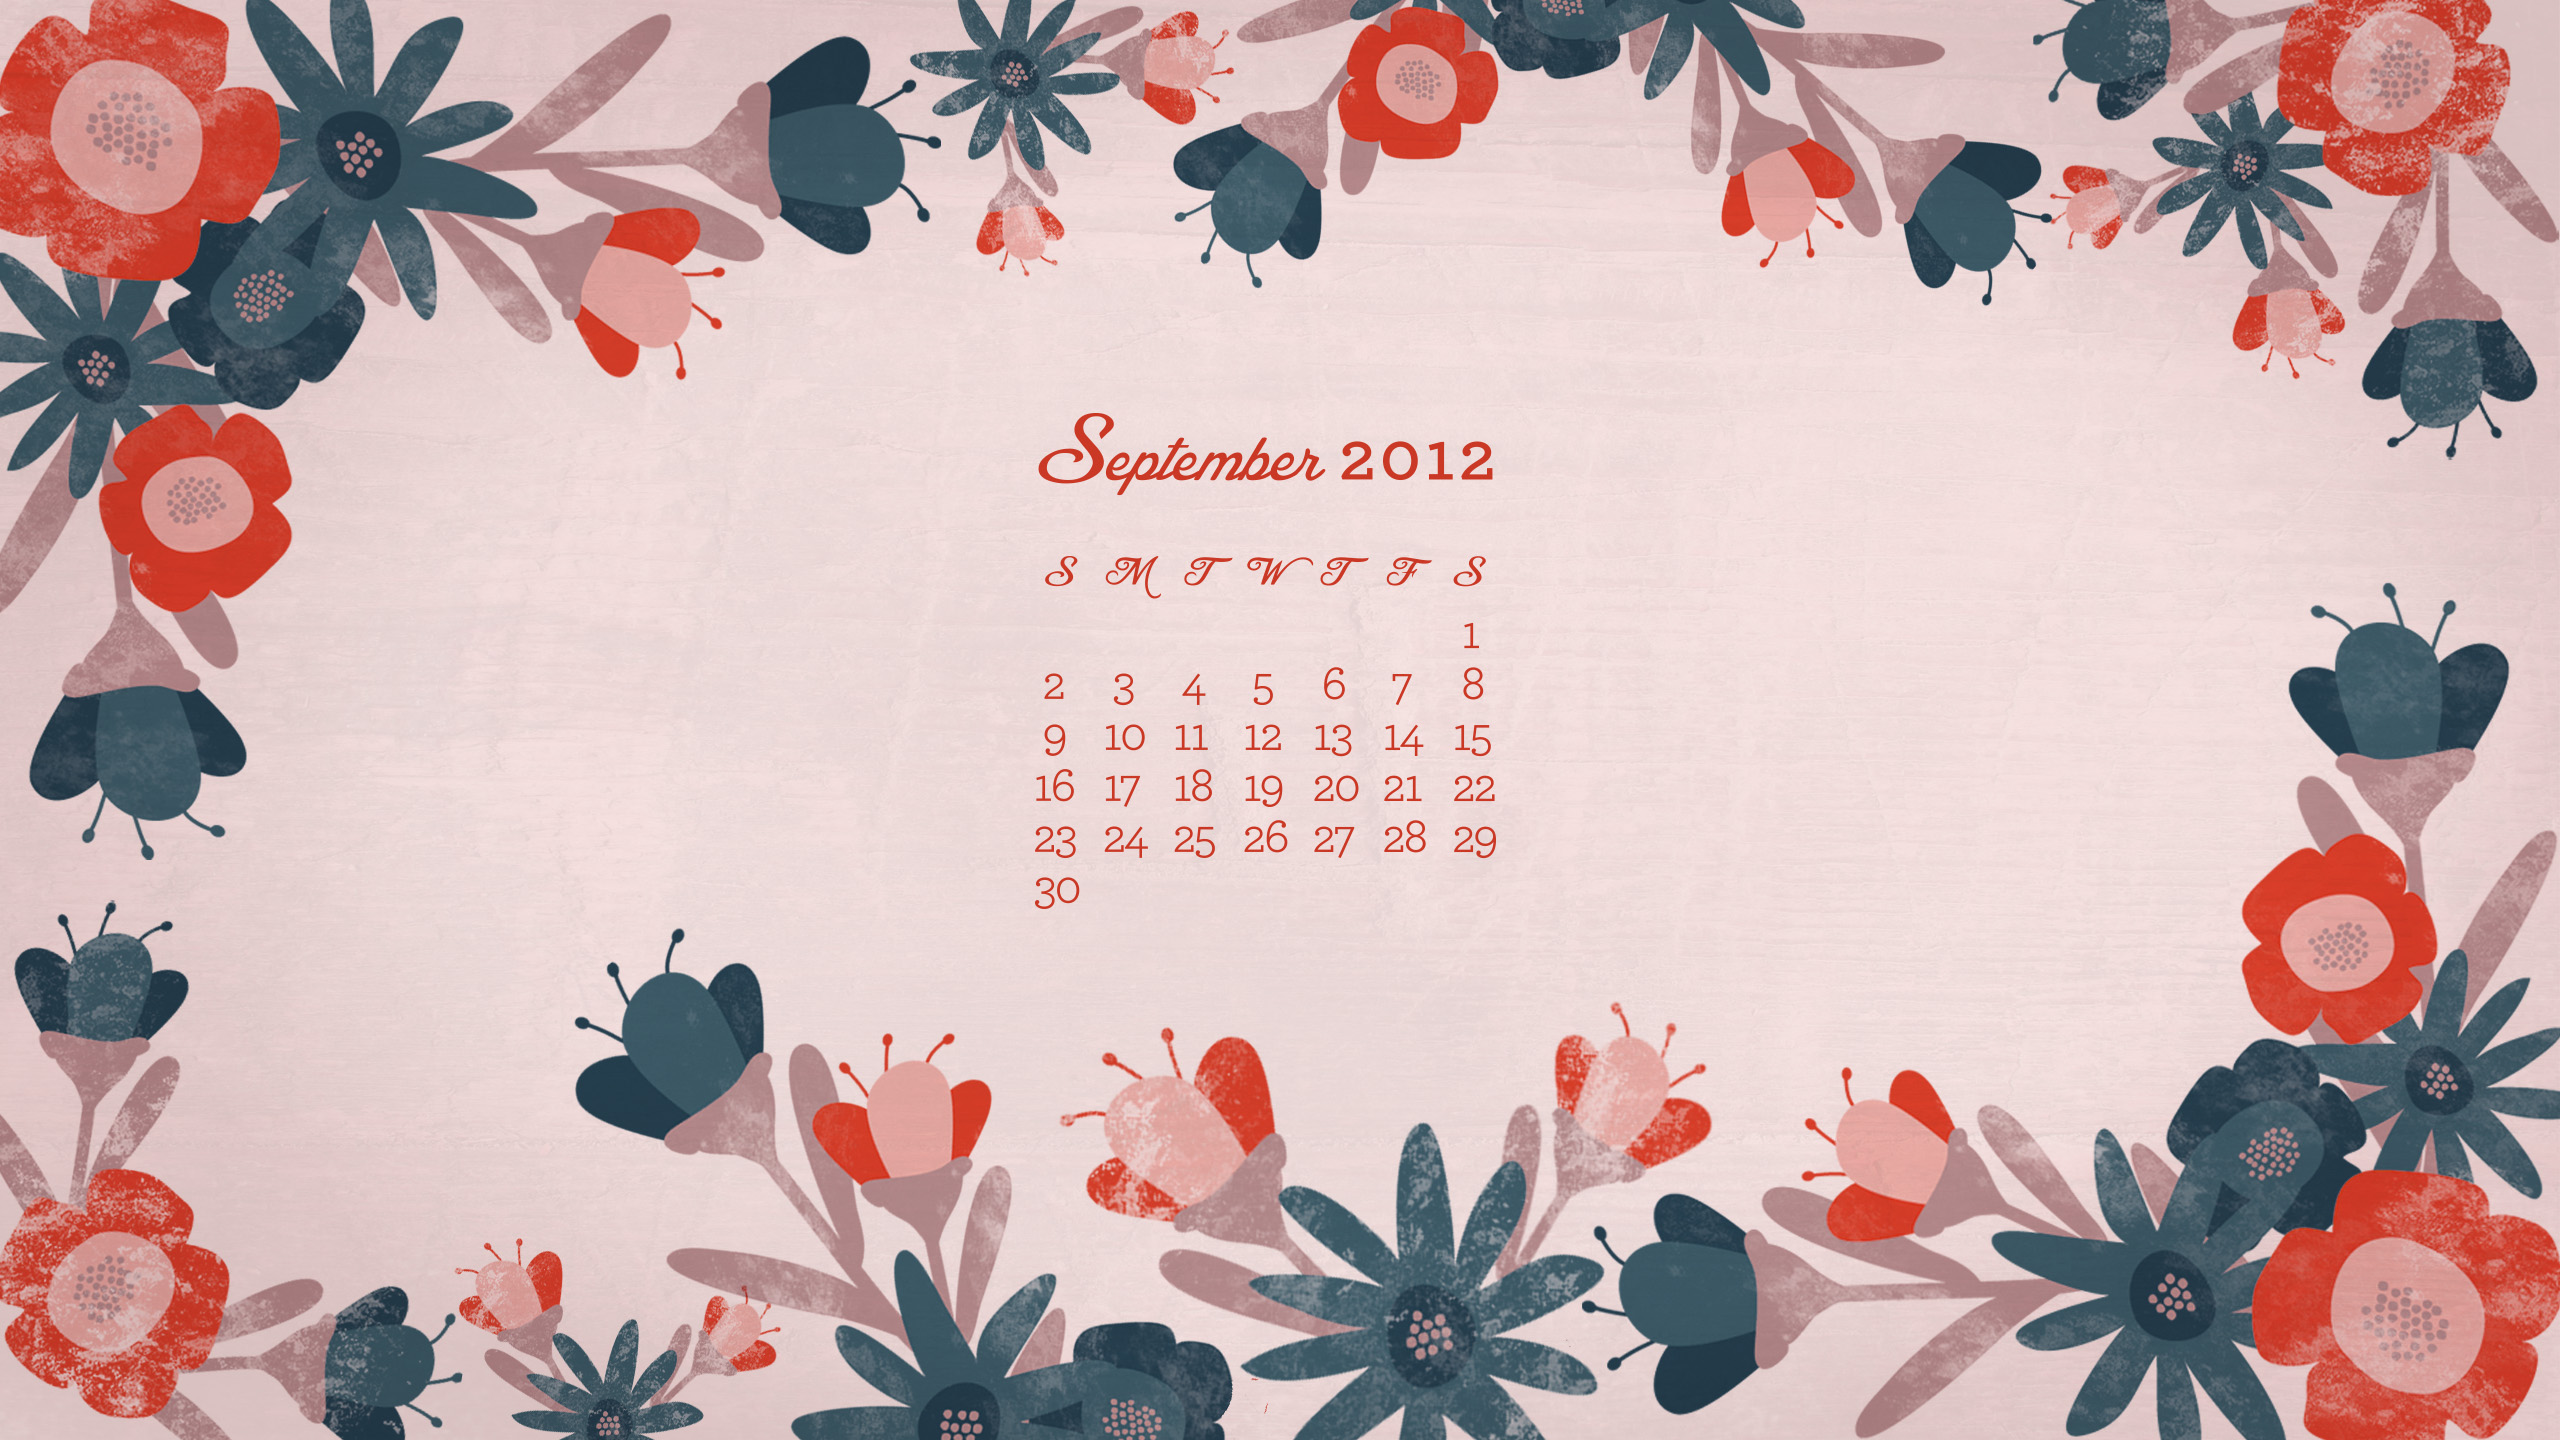 September 2012 Desktop, iPhone & iPad Calendar Wallpaper Sarah Hearts